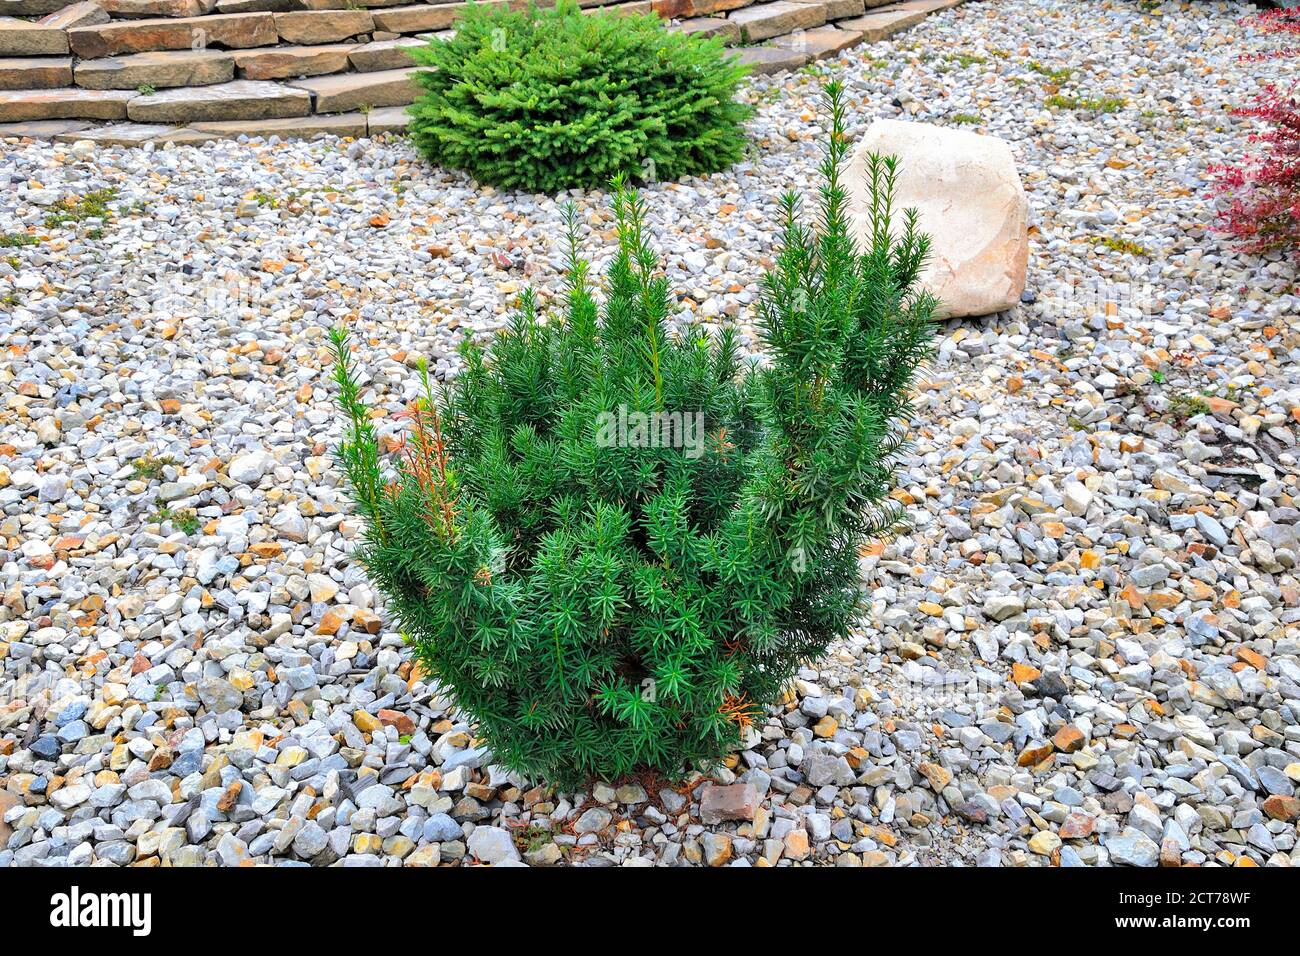 Foto von Jungpflanze von Hicks Eibe (Taxus 'Hicks') - Zierpflanze immergrünen Nadelbaum für die Landschaftsgestaltung von Park oder Garten. Landschaftsgestaltung, Garten Stockfoto